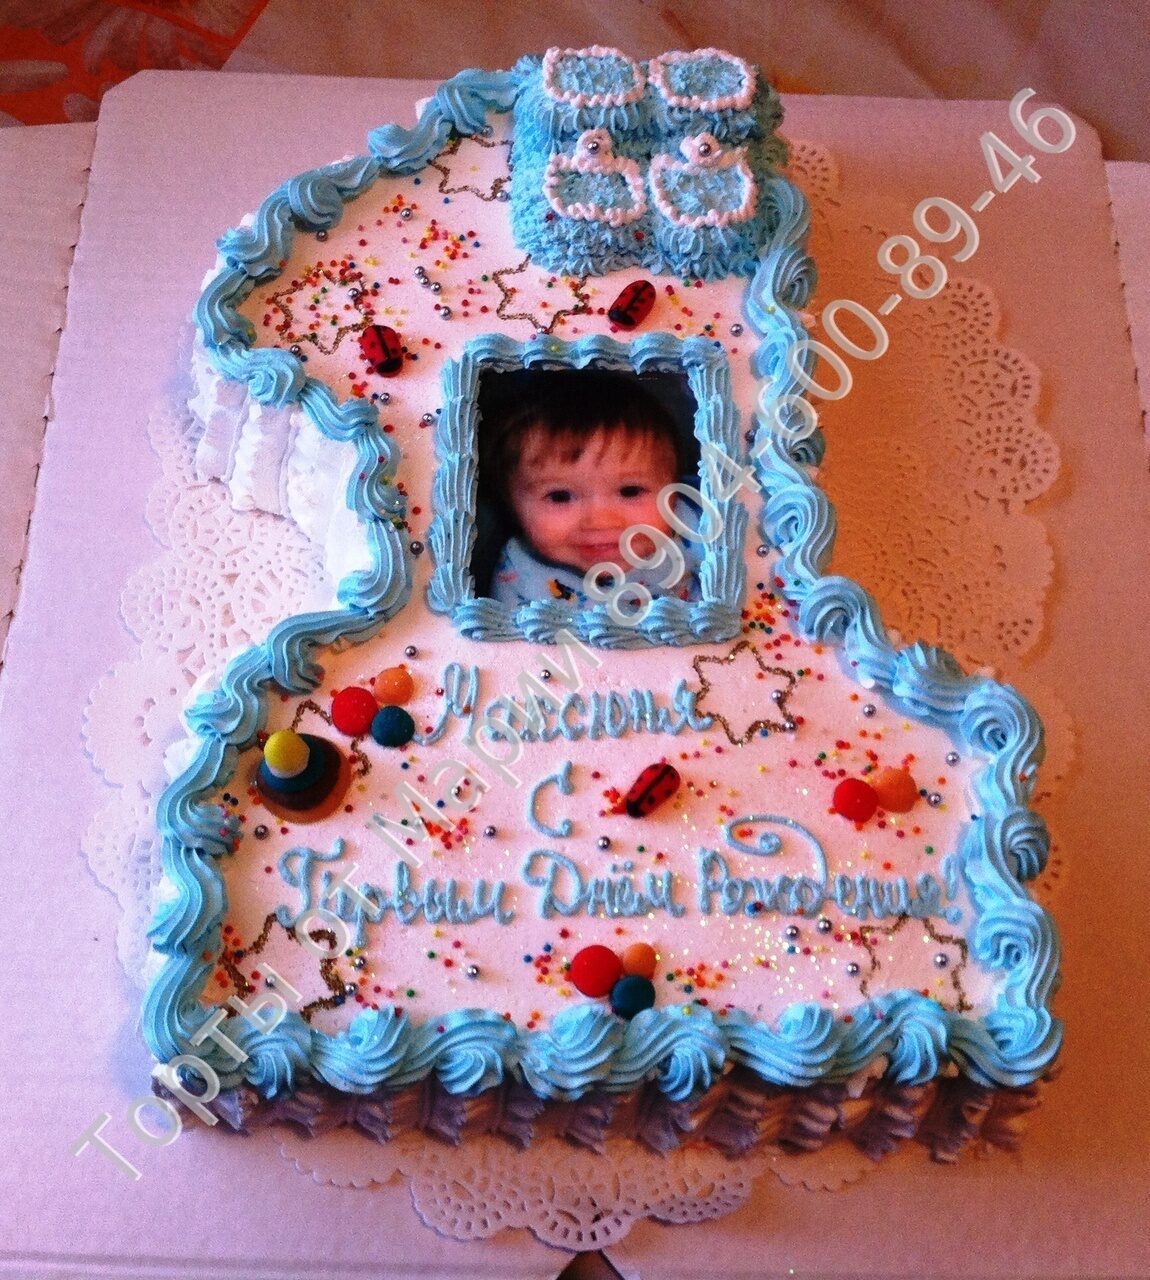 Как оформить торт на день рождения ребенка